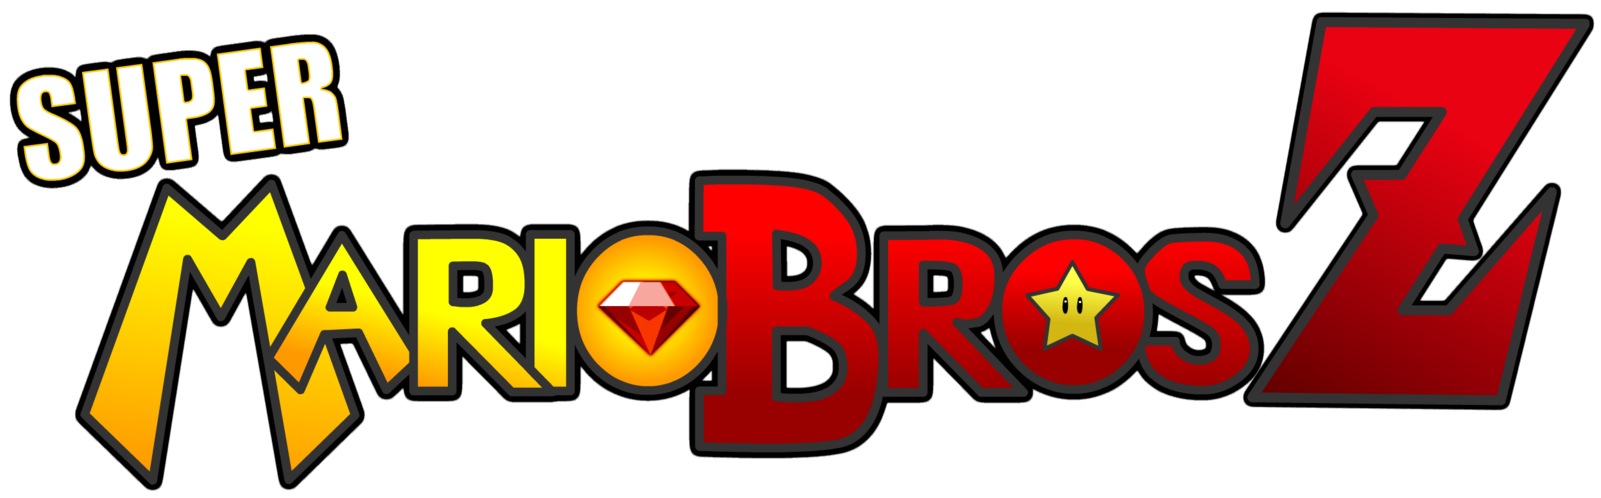 NEW Super Mario Bros Z Logo by KingAsylus91 on DeviantArt